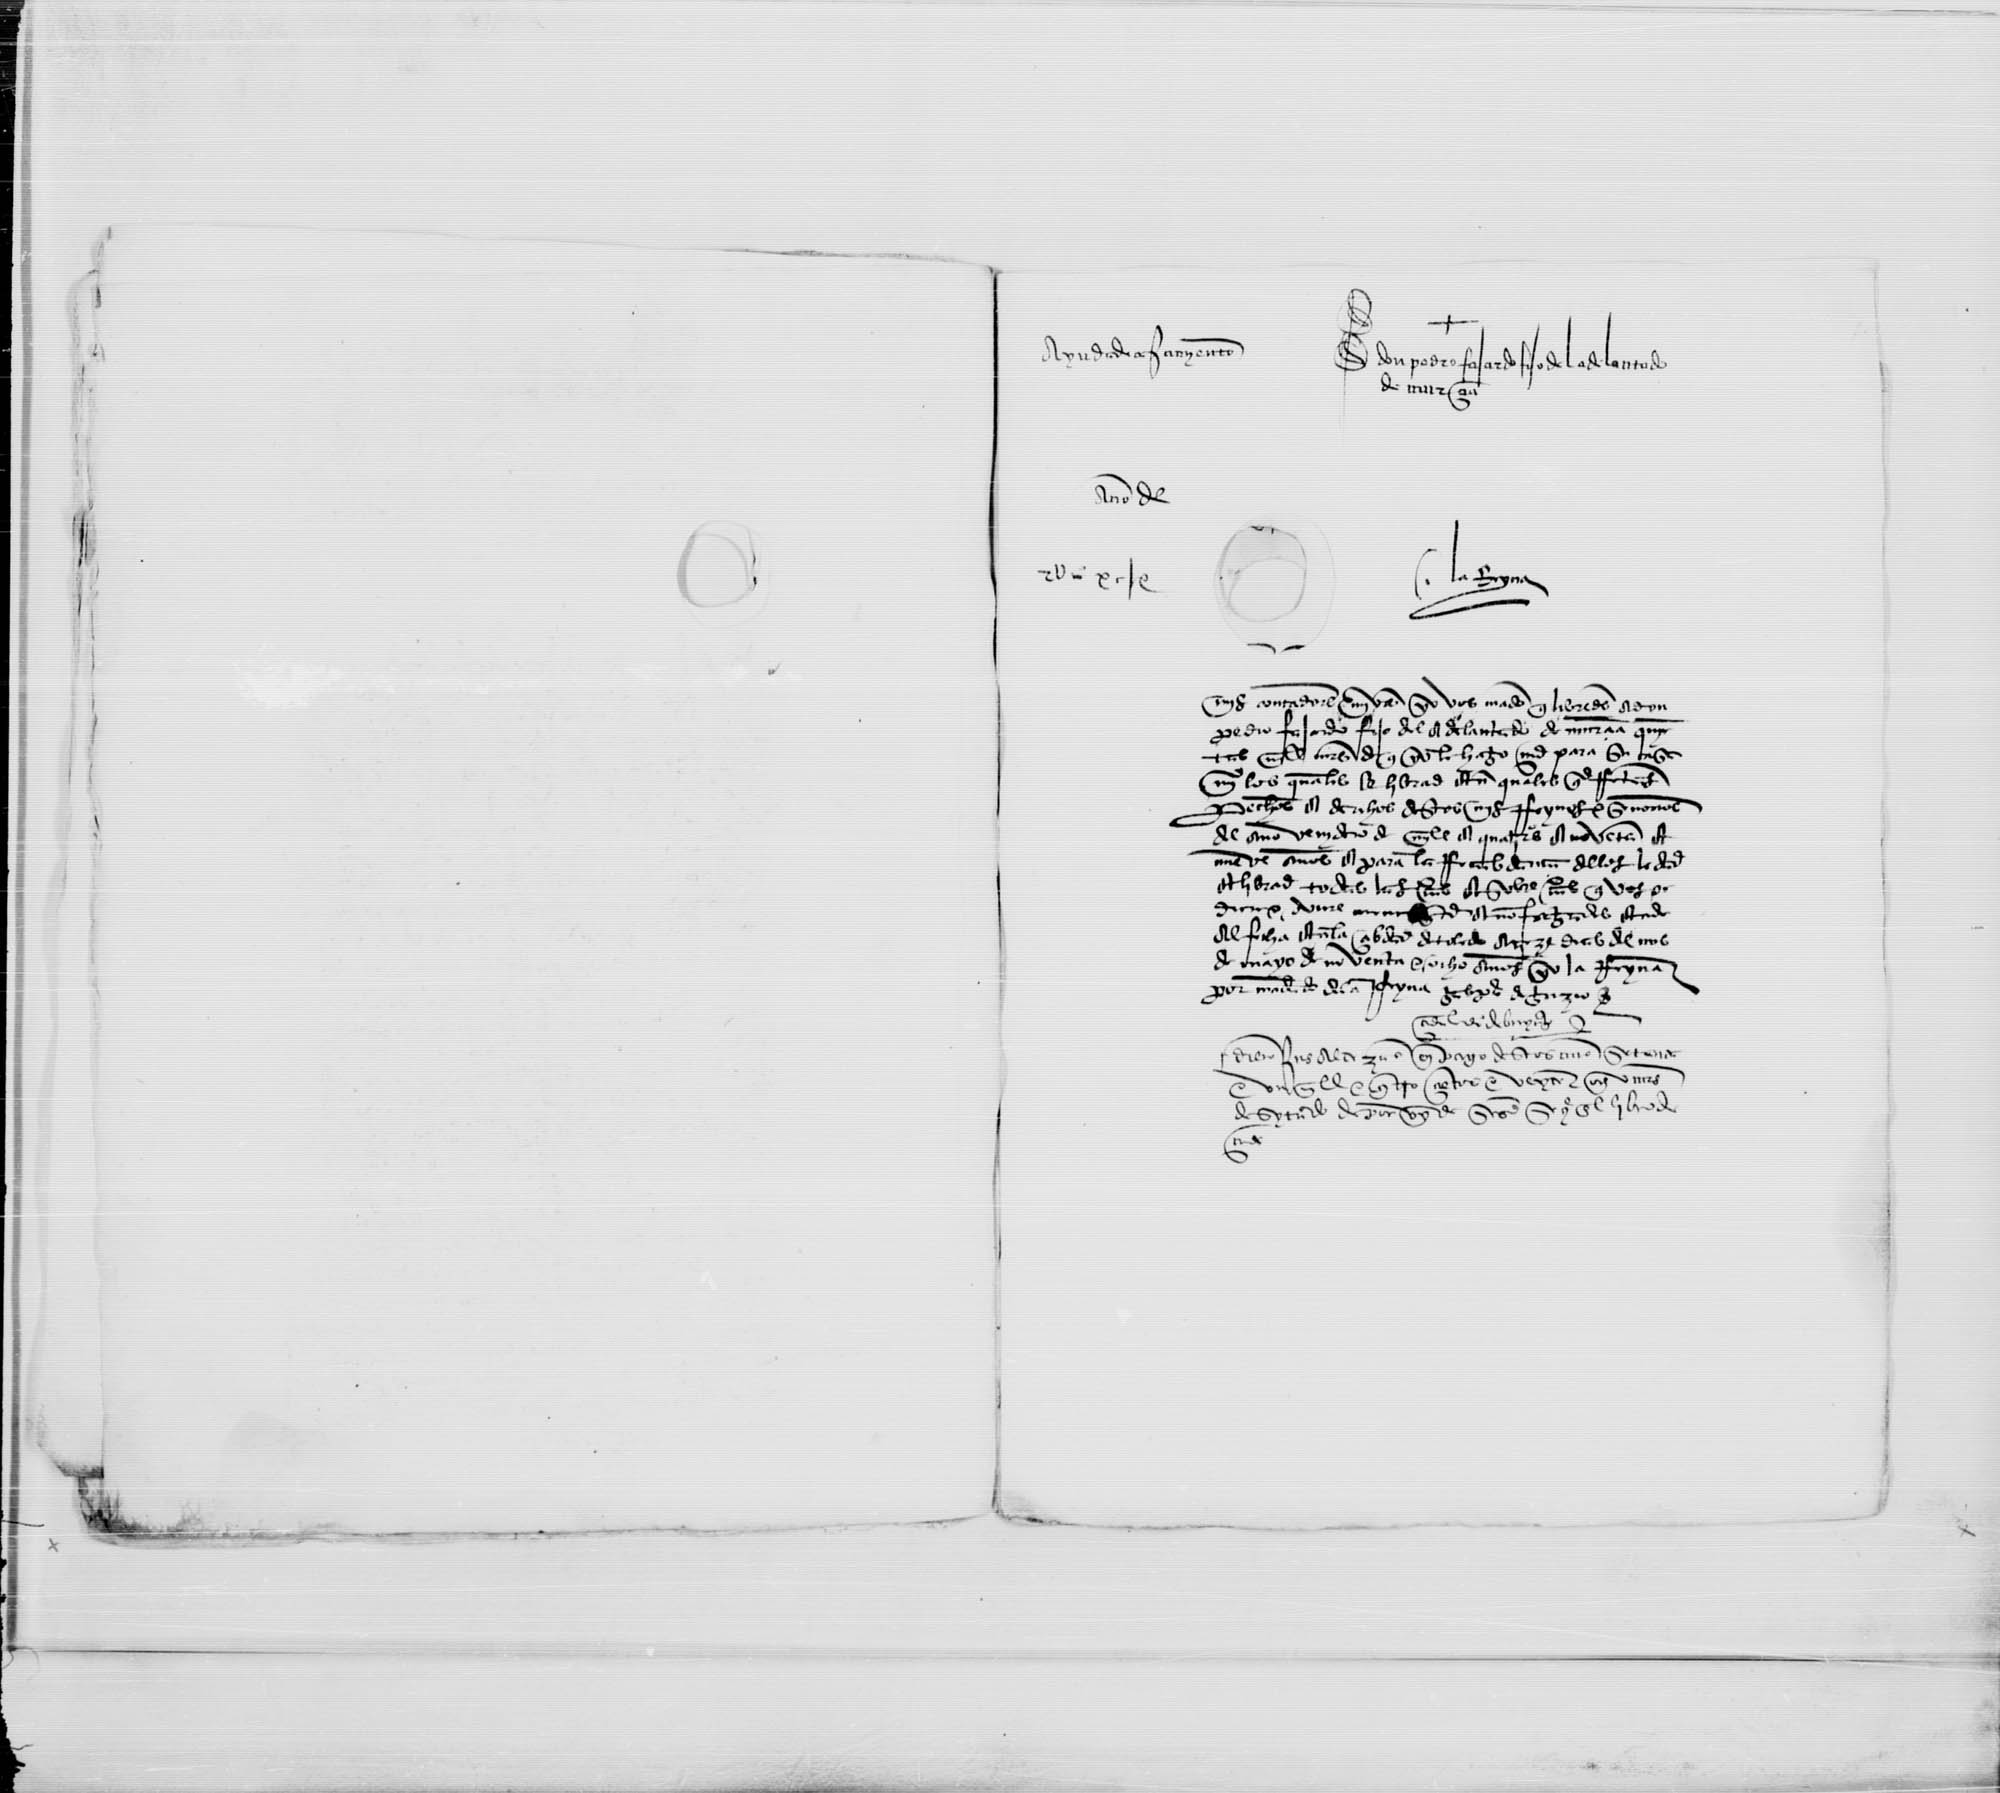 Cédula de la reina Isabel a los contadores mayores en que les comunica la merced hecha a don Pedro Fajardo de 500.000 maravedíes para ayuda a su casamiento.